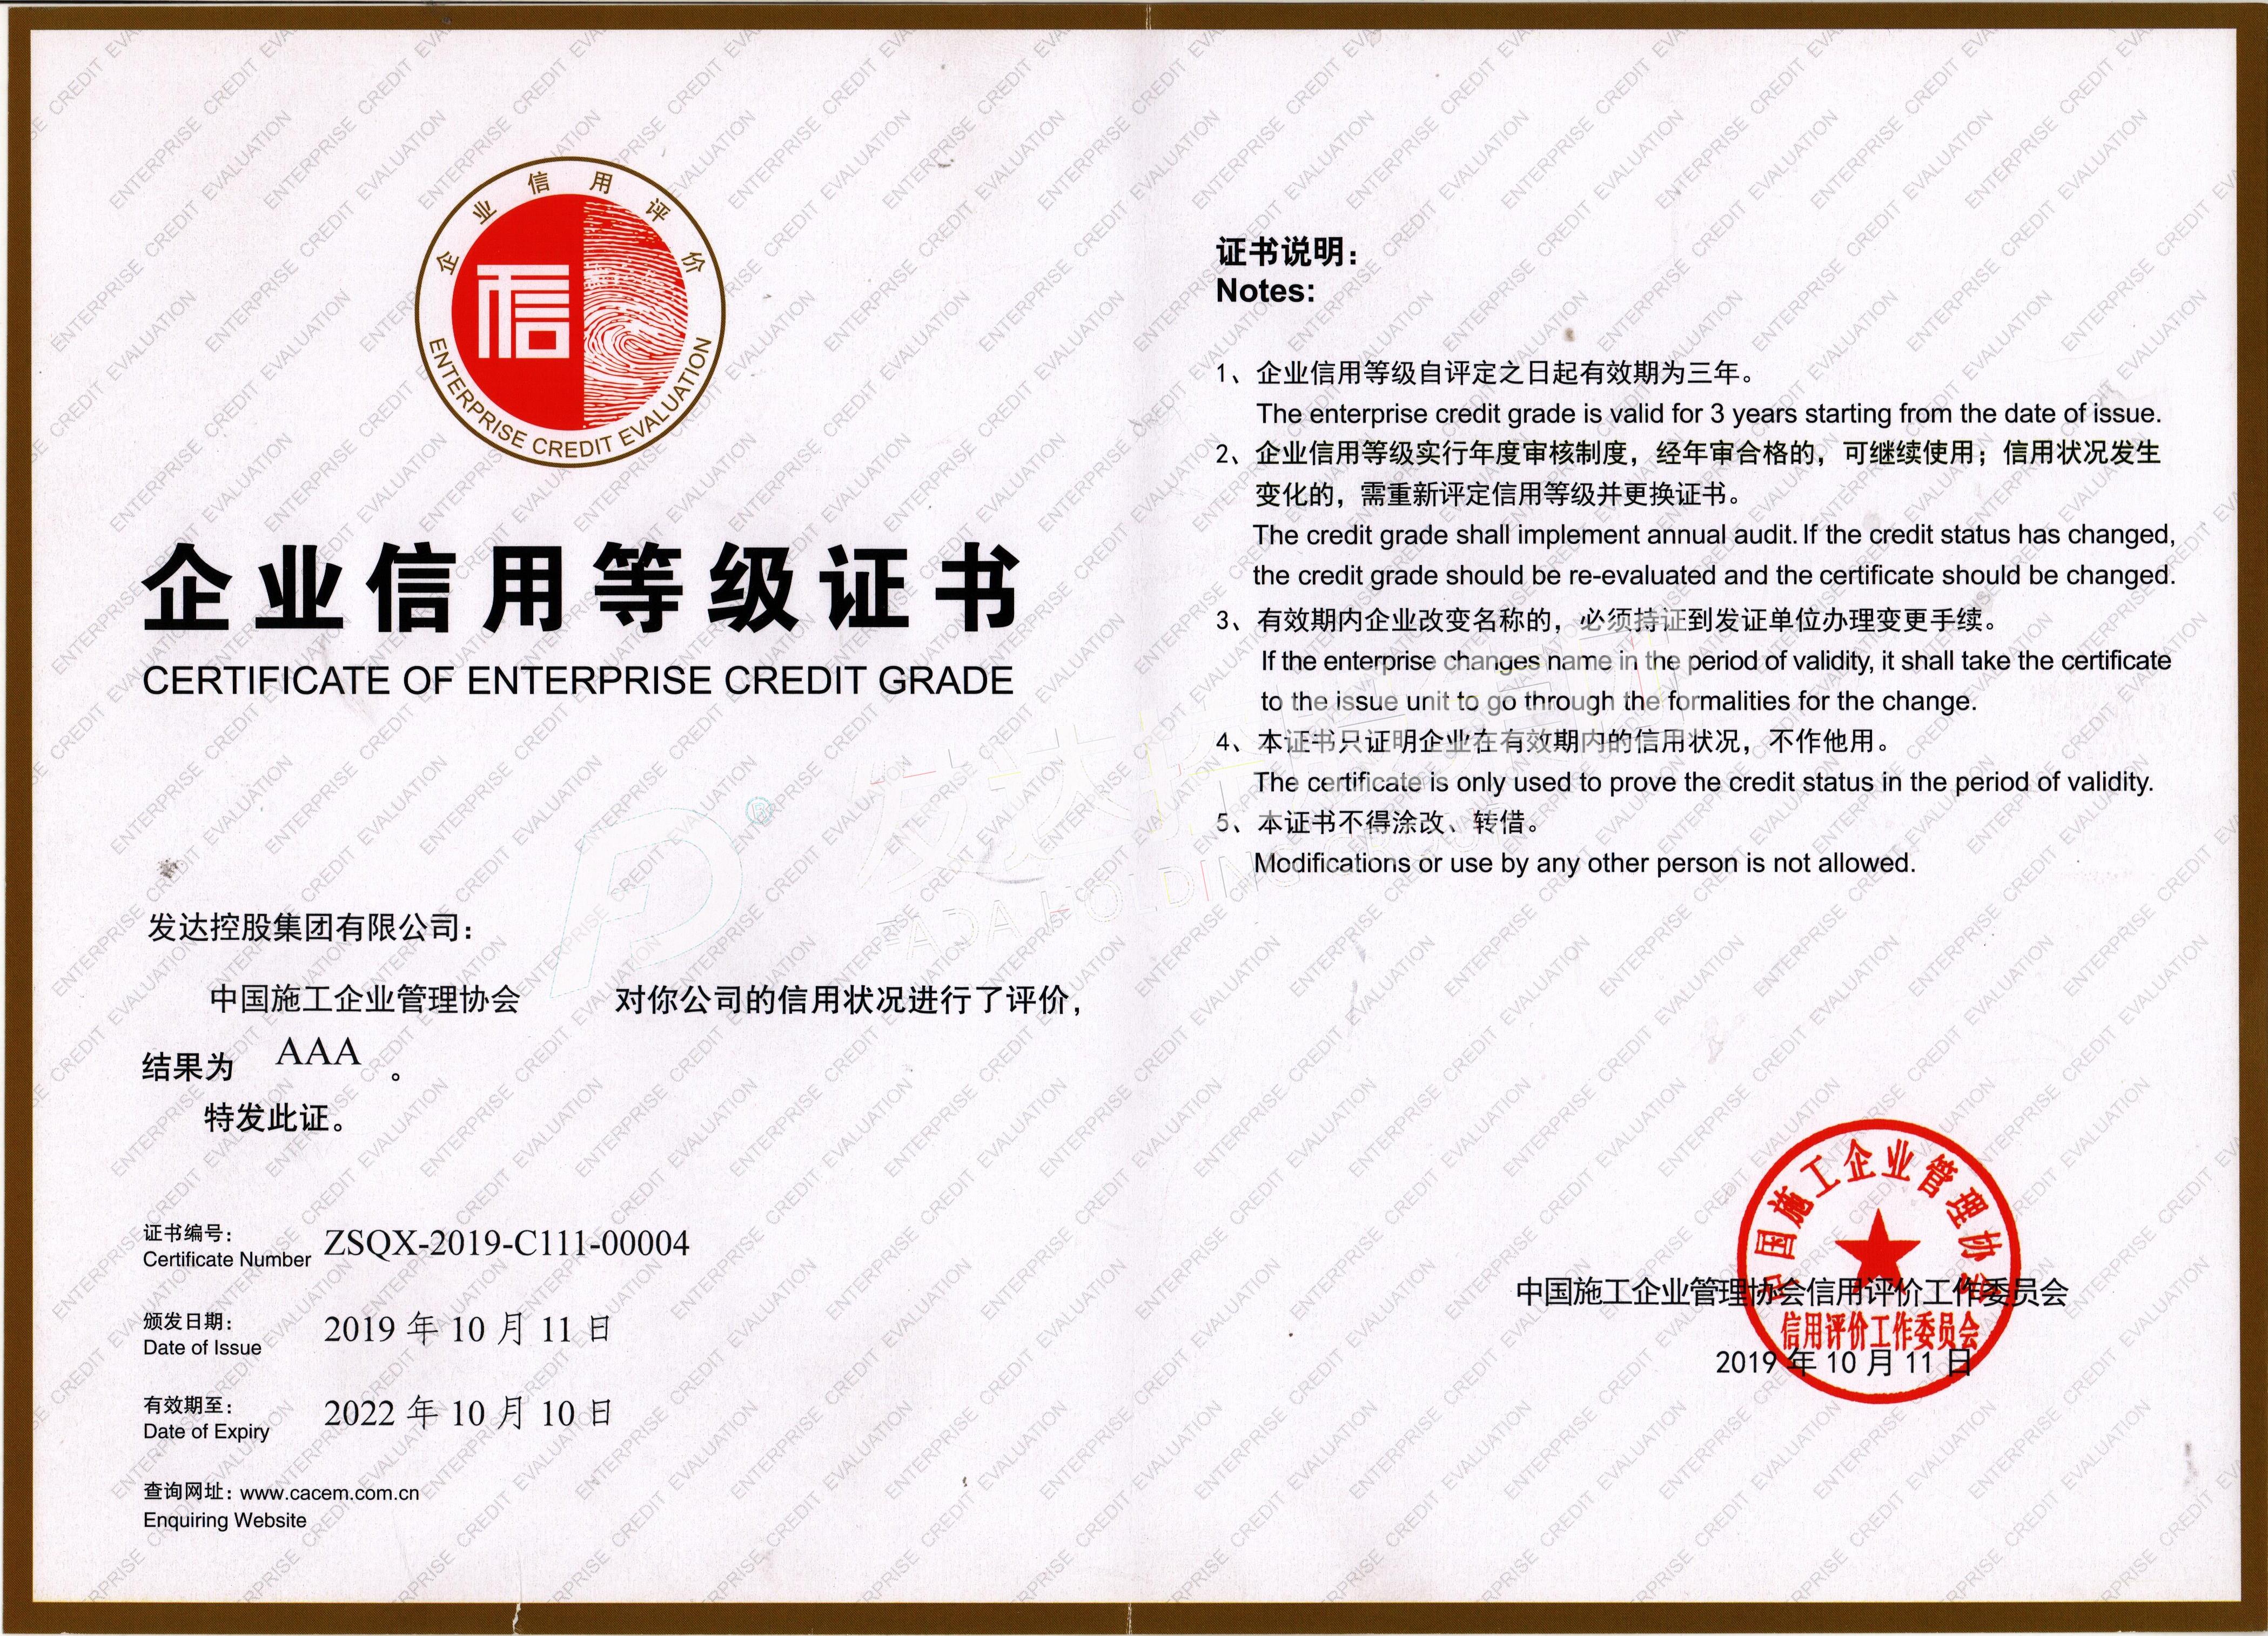 1.中国施工企业管理协会AAA级信用企业.jpg